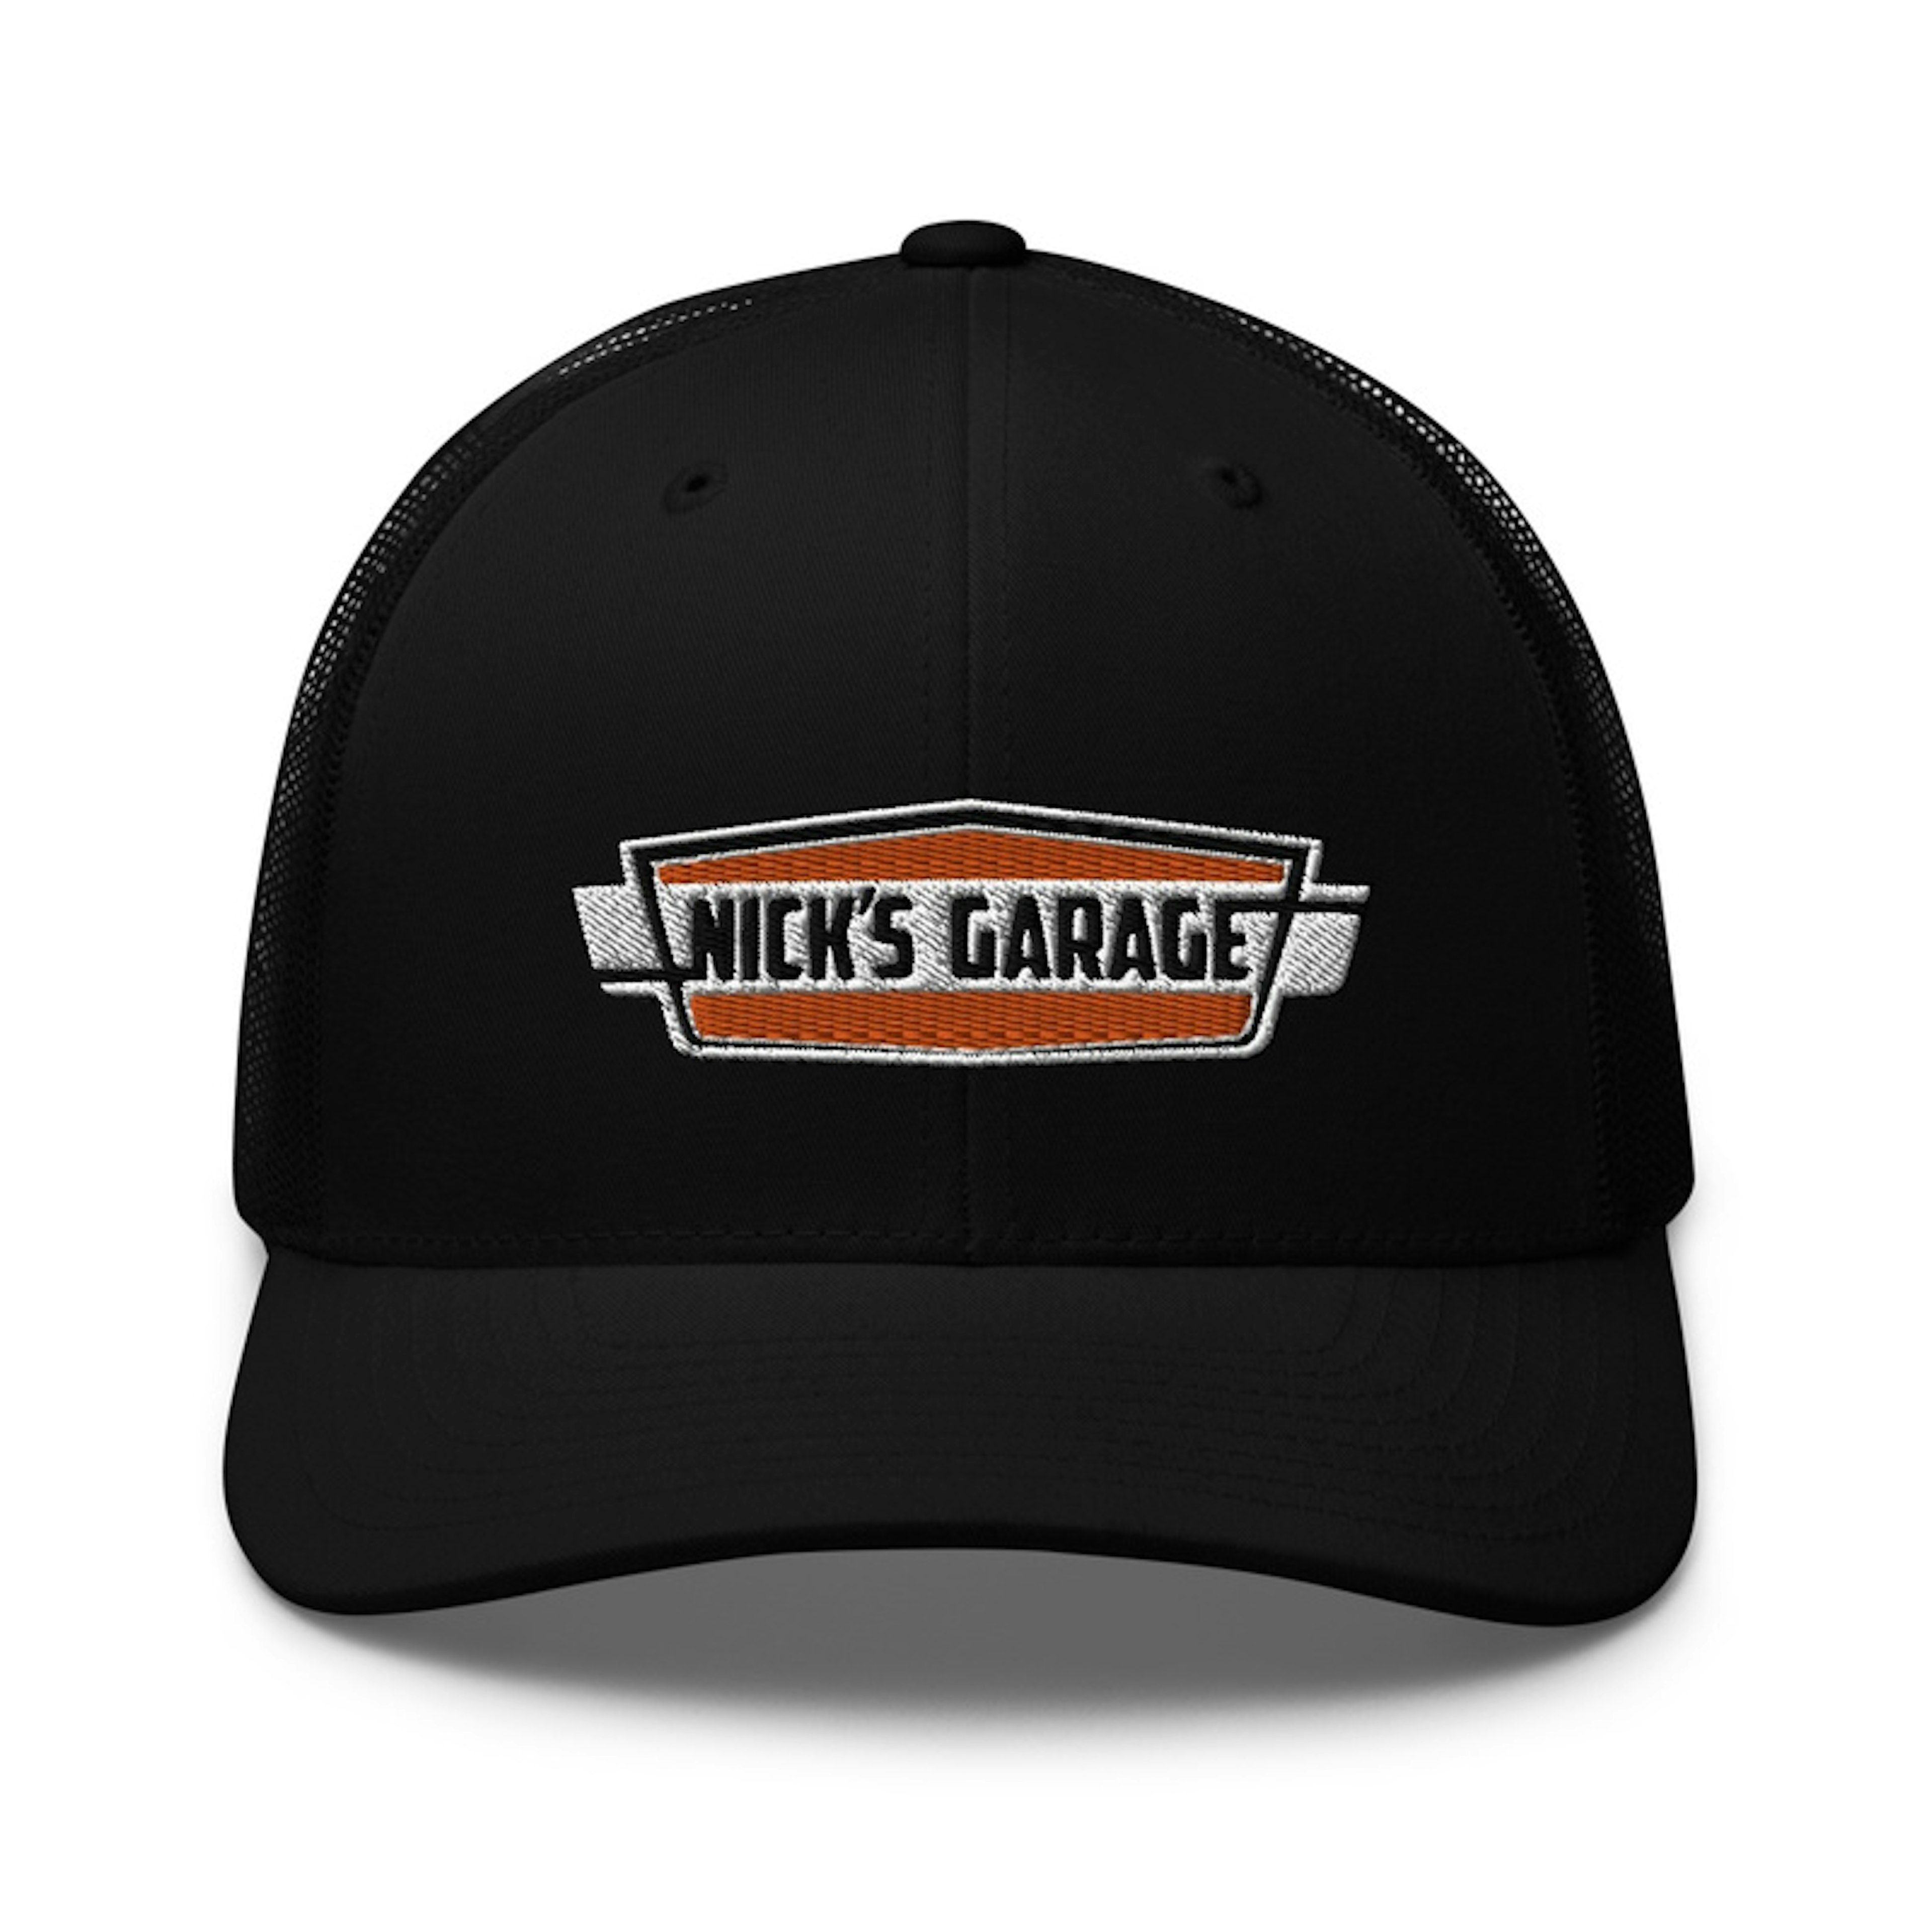 Nick's Garage Embroidered Trucker Cap